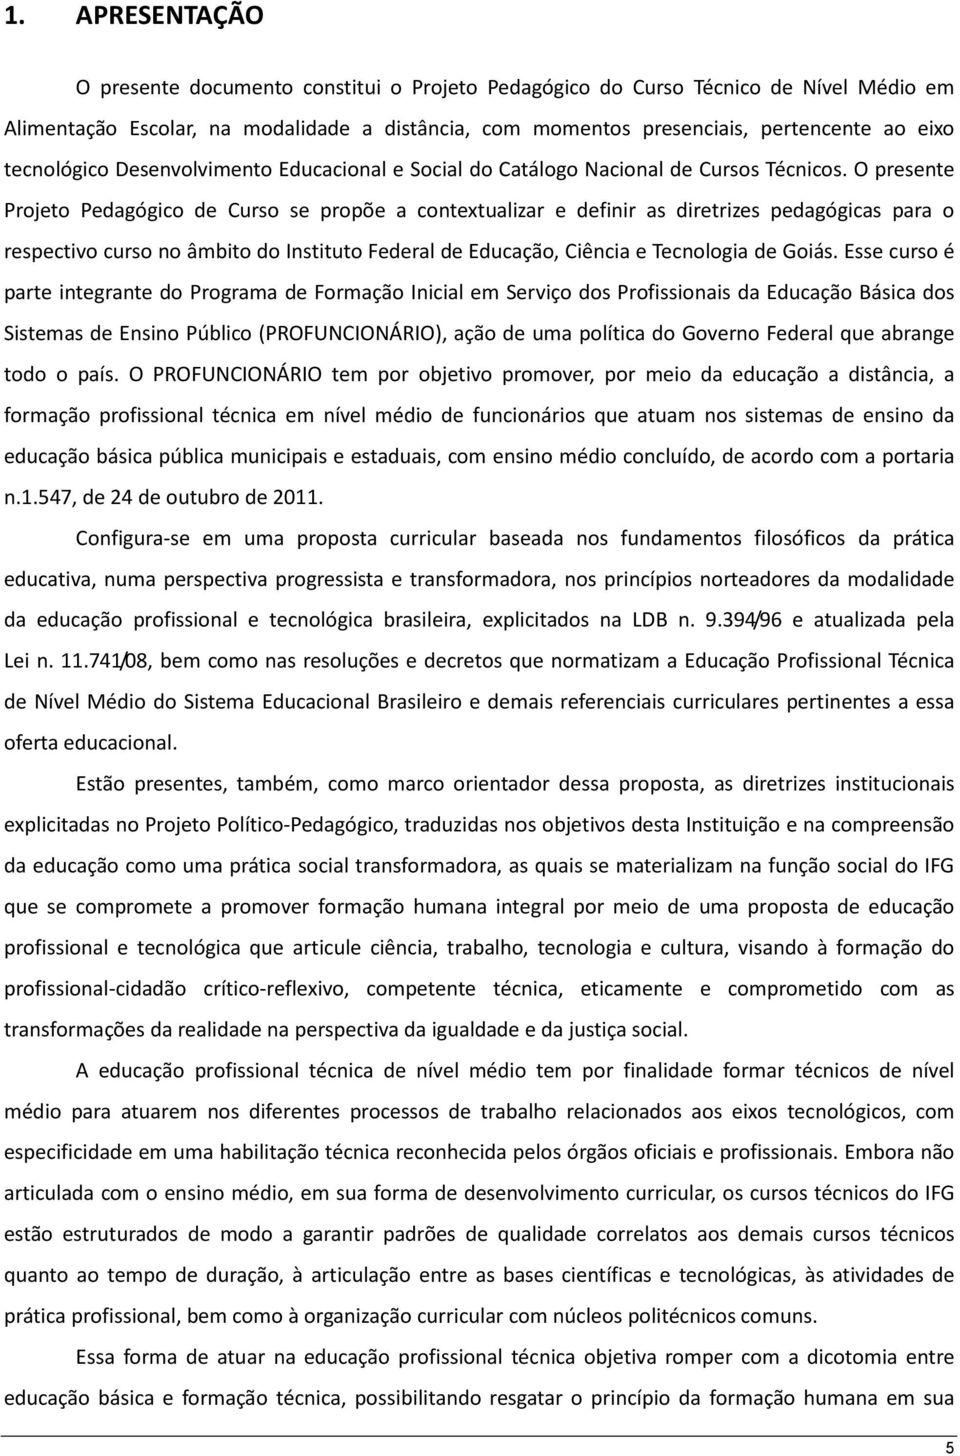 O presente Projeto Pedagógico de Curso se propõe a contextualizar e definir as diretrizes pedagógicas para o respectivo curso no âmbito do Instituto Federal de Educação, Ciência e Tecnologia de Goiás.